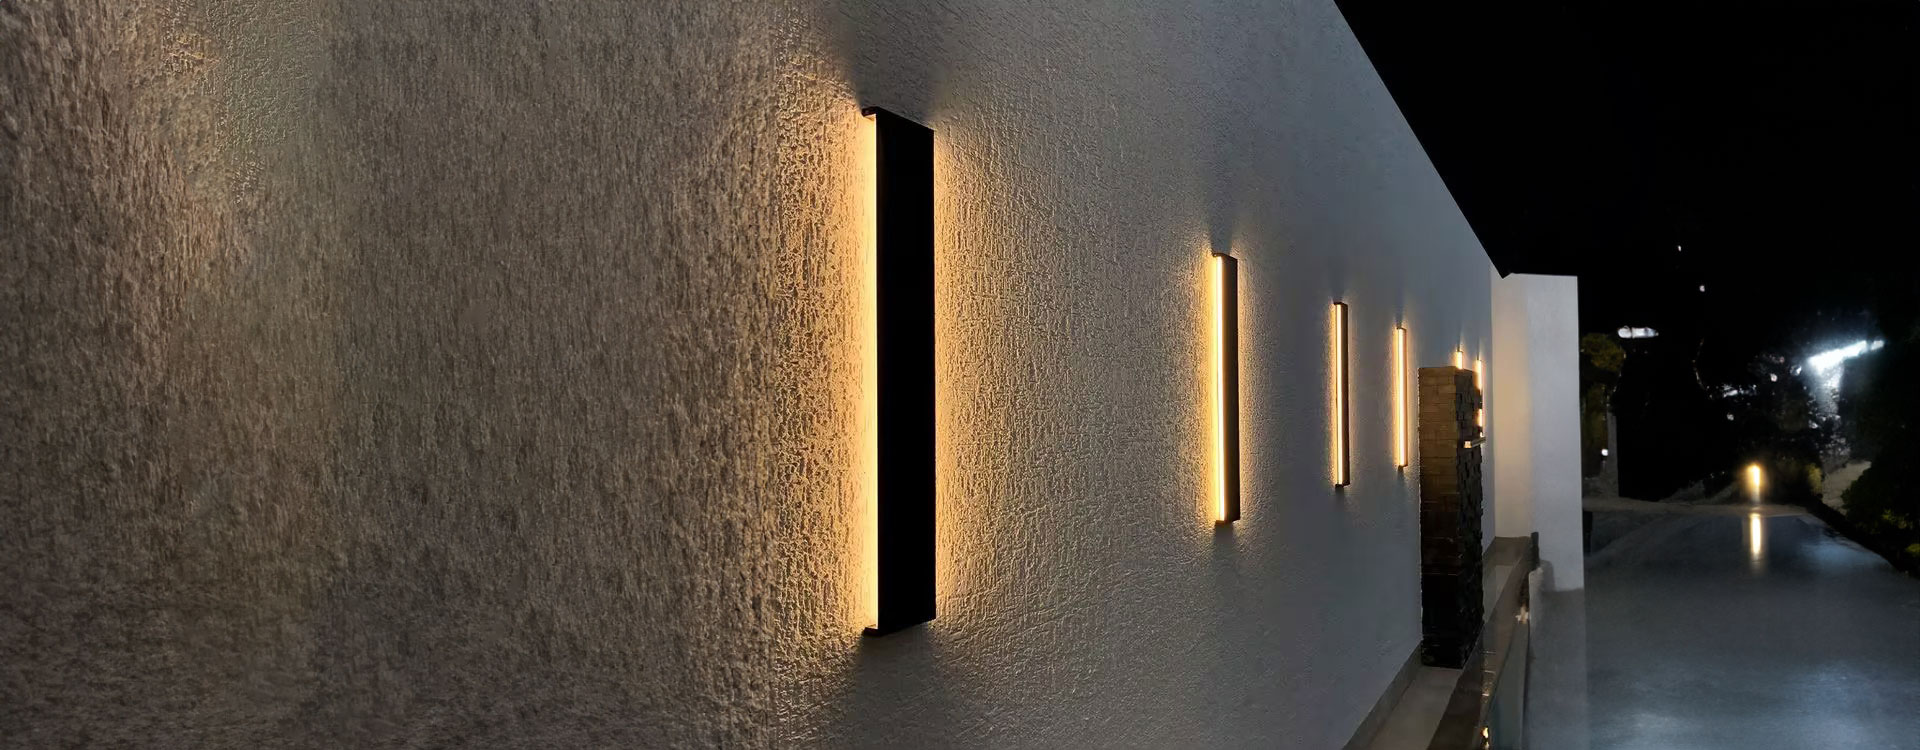 led wall light manufacturer